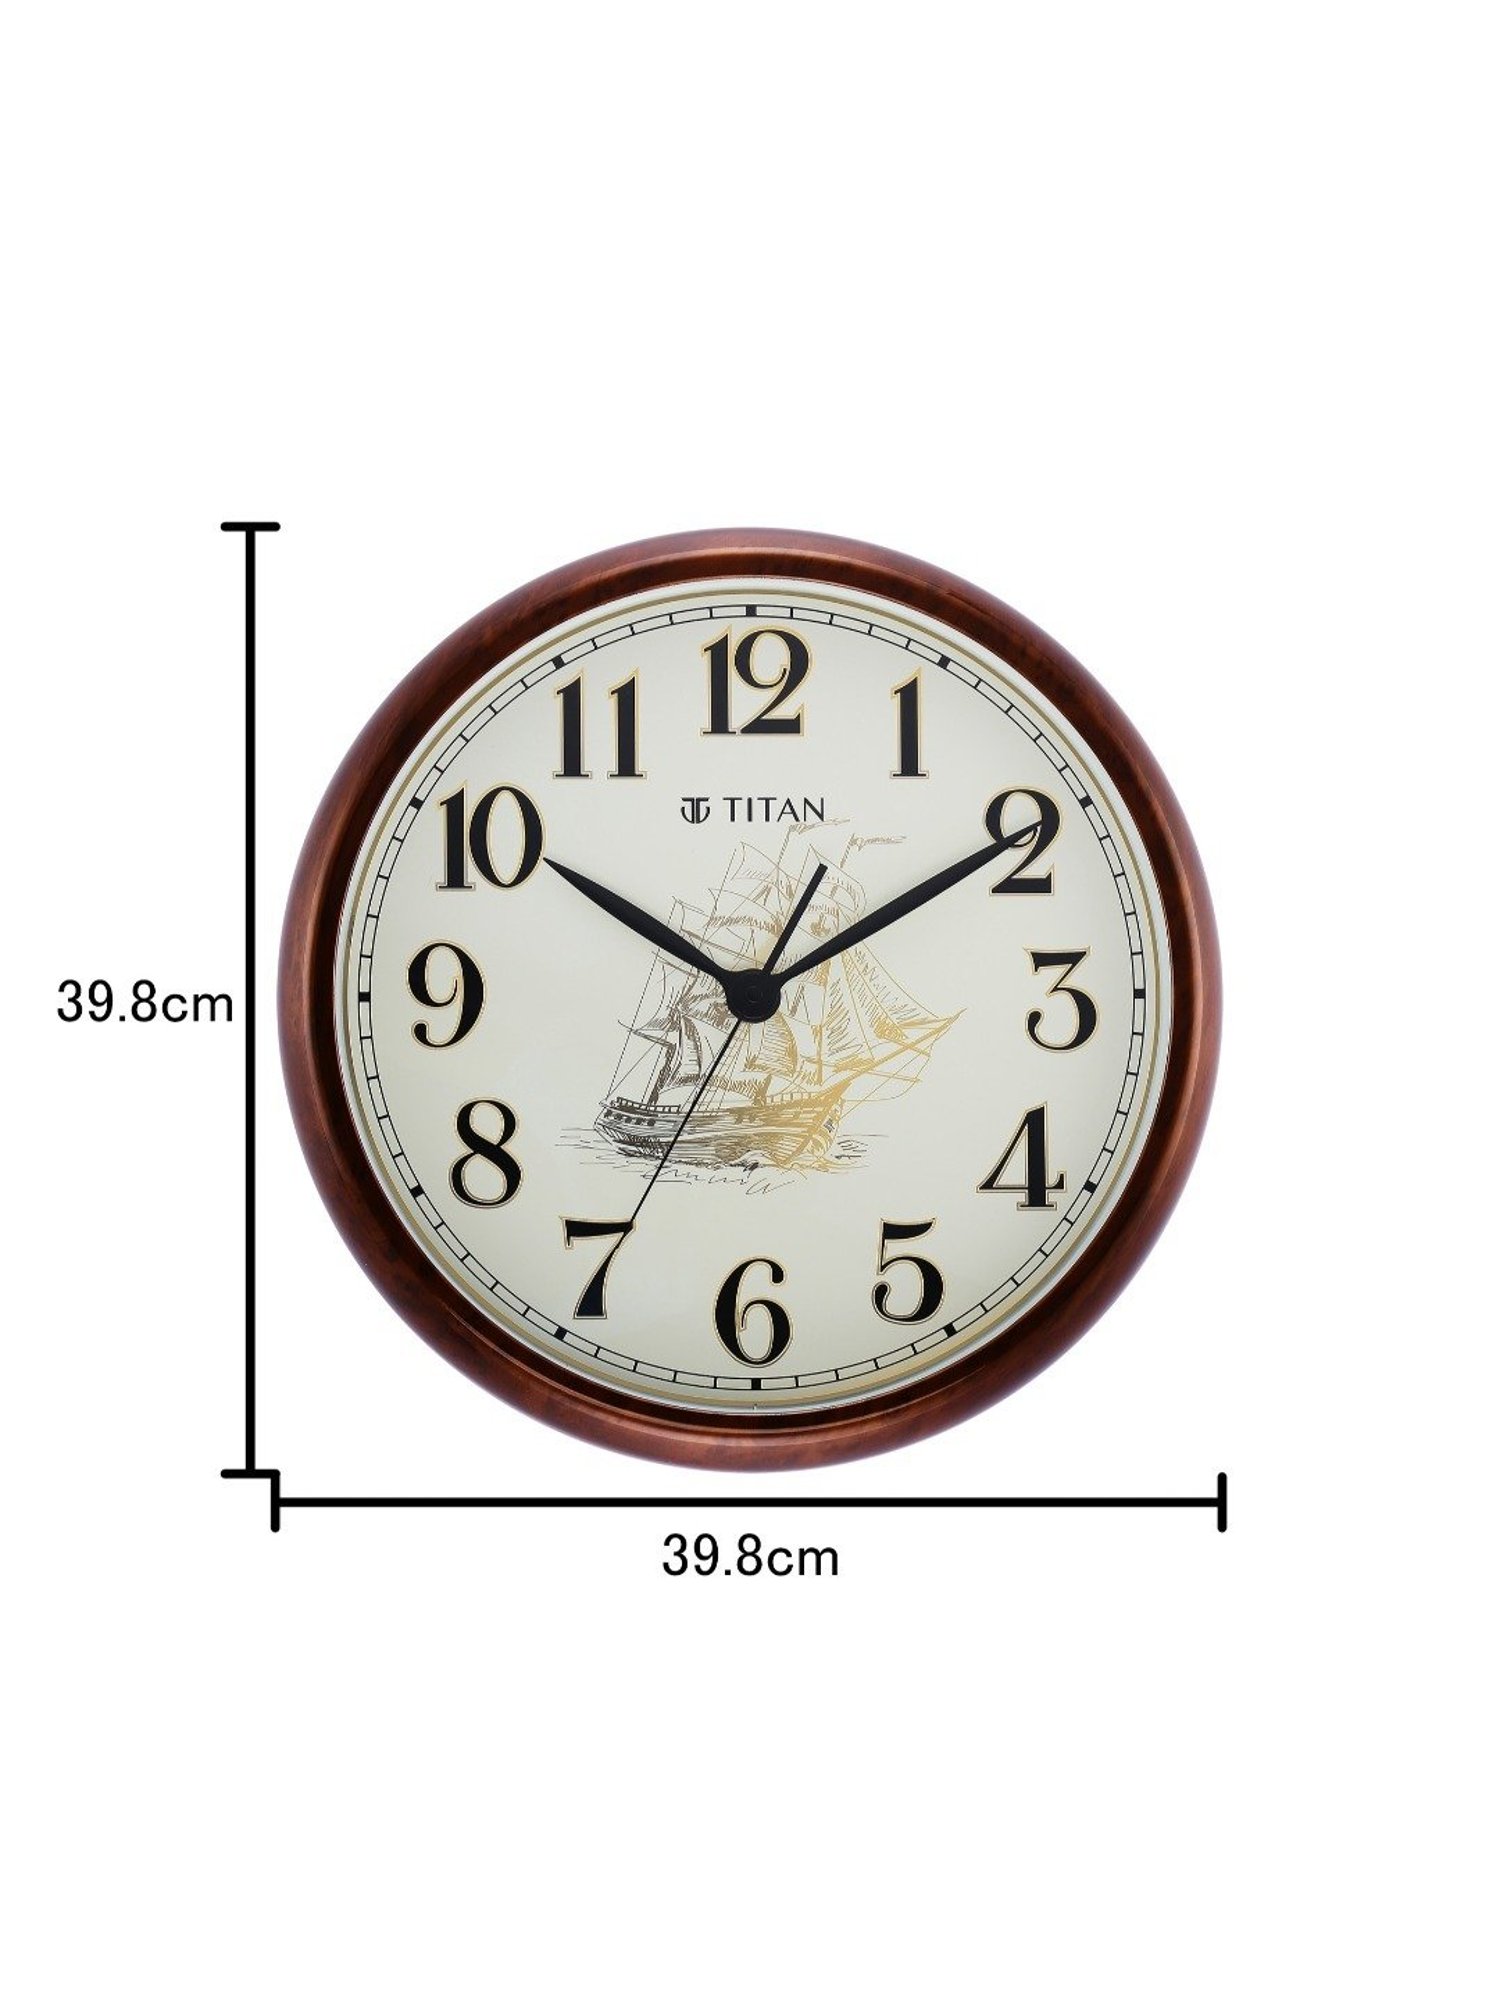 Titan wall clock - Home Decor & Garden - 1765462838